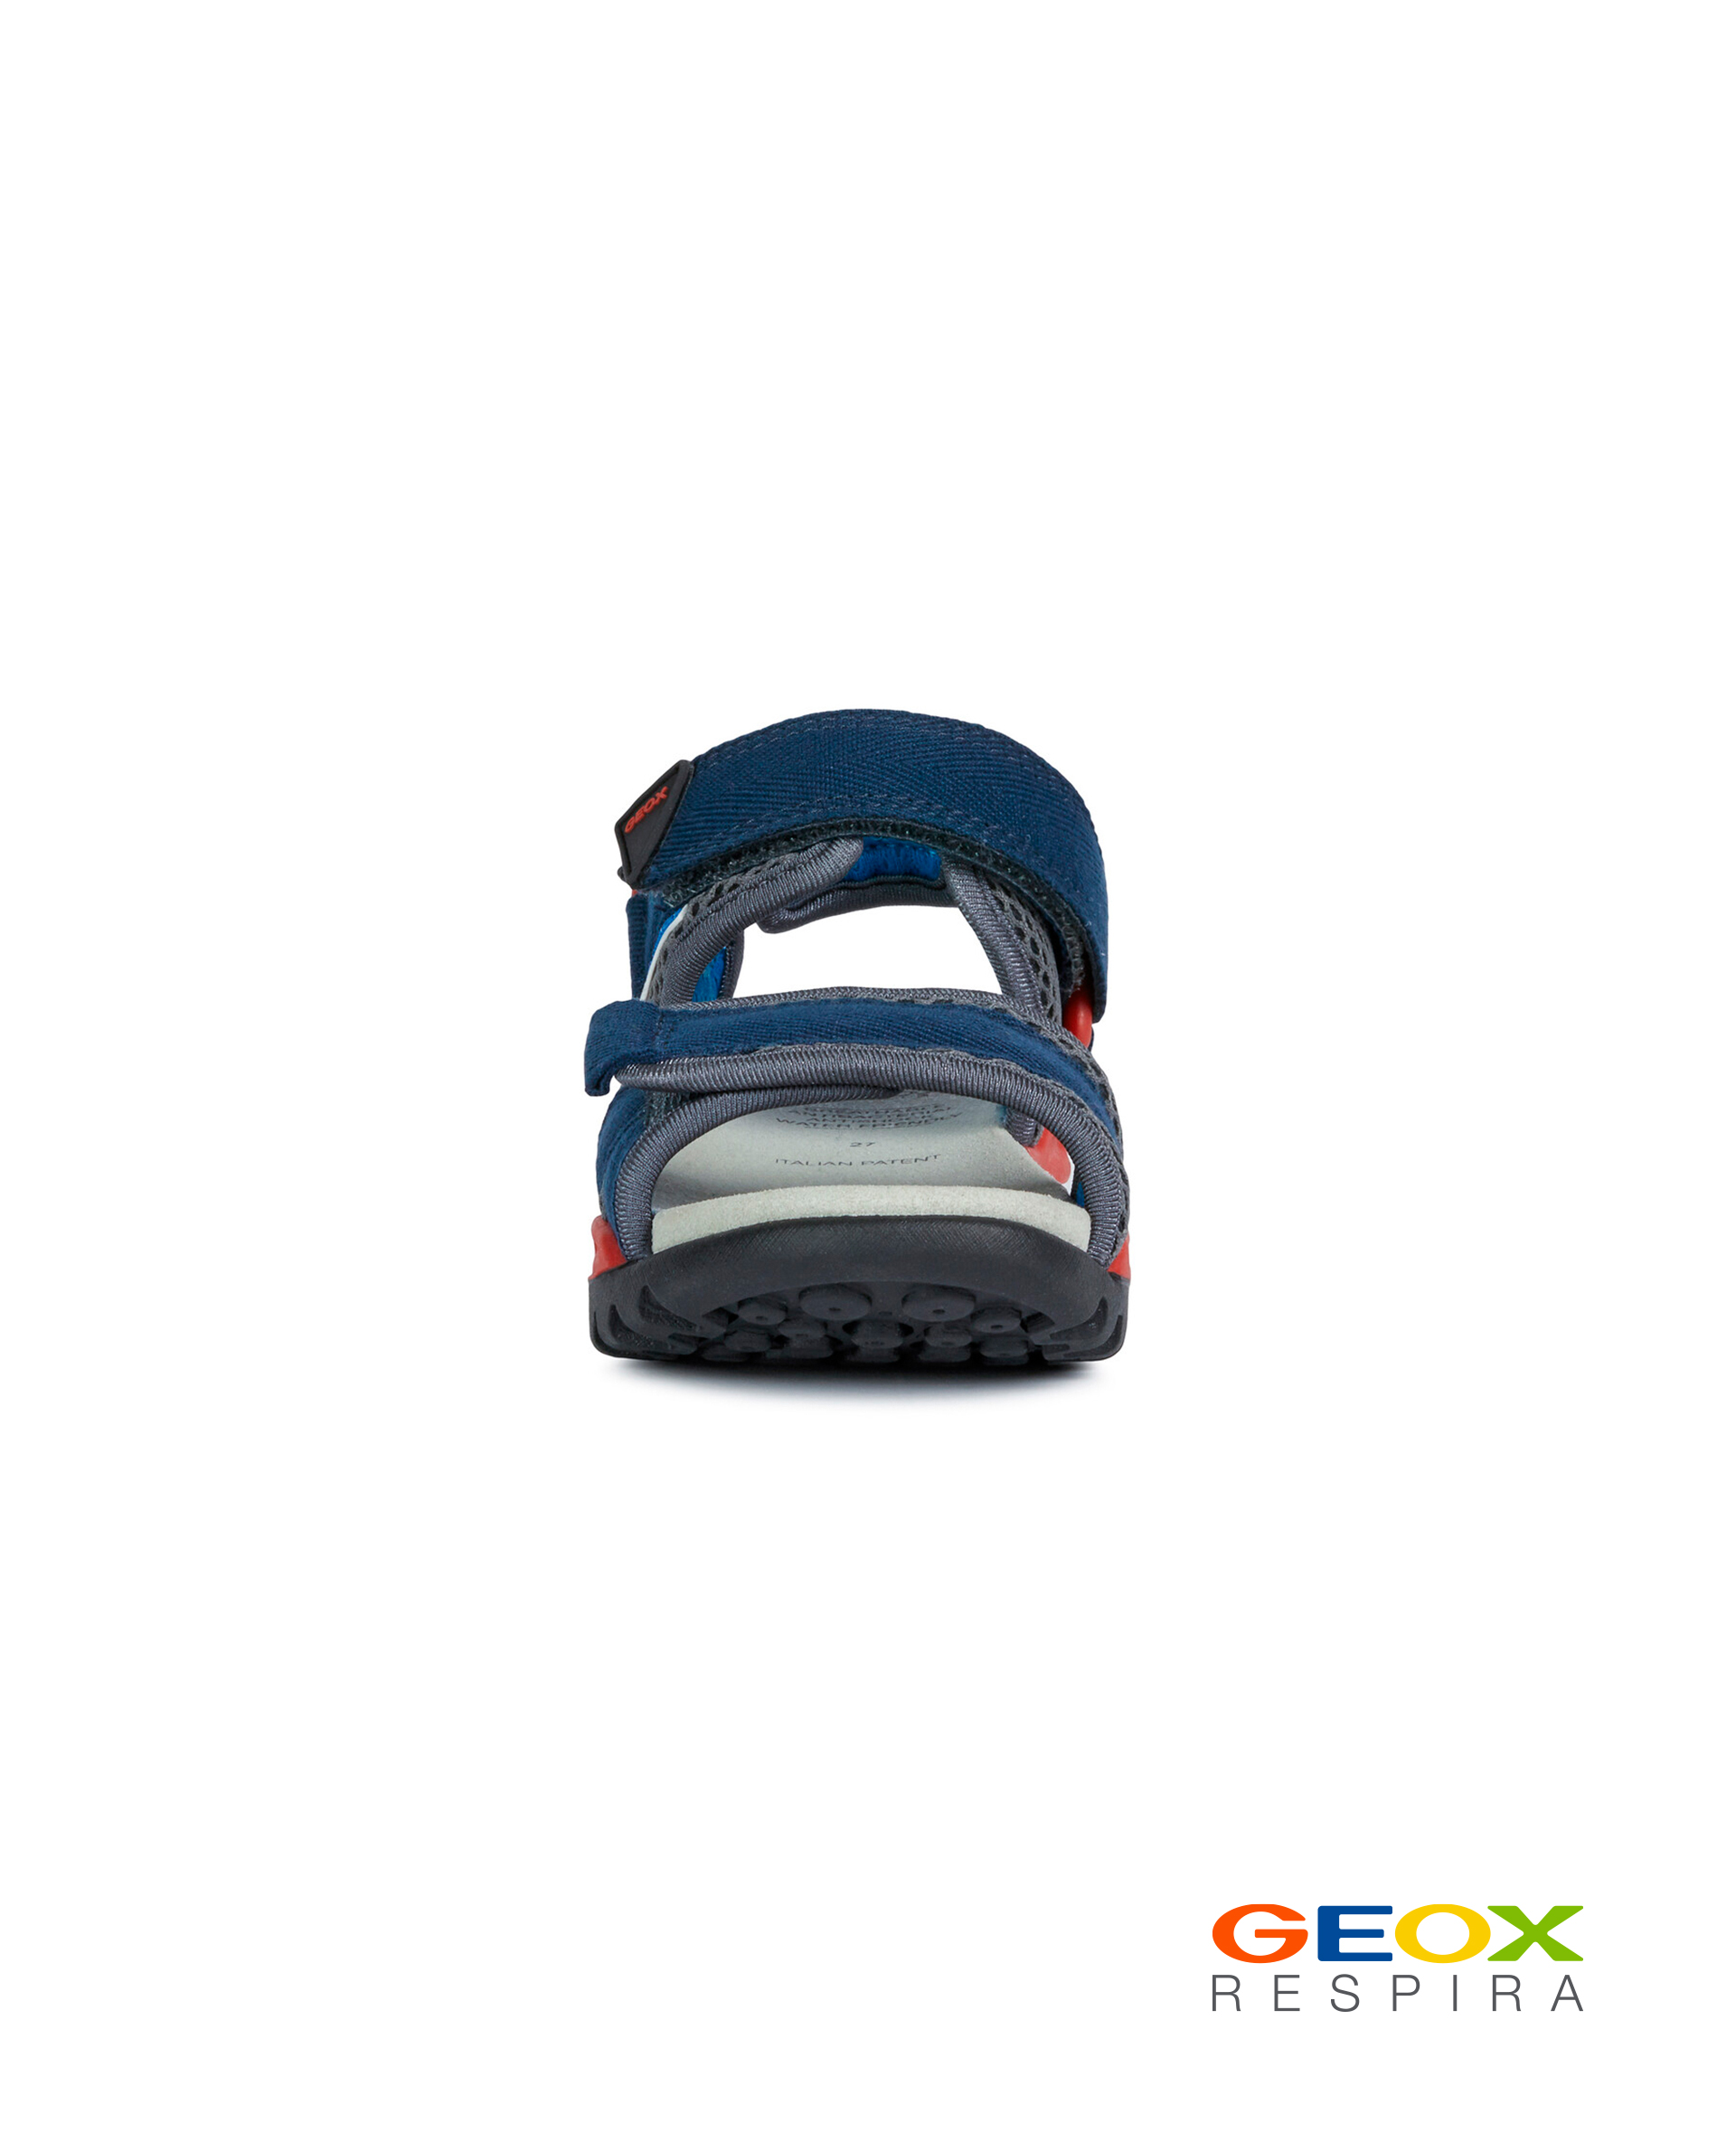 Синие сандалии Geox для мальчика J020RC01411C0735, размер 34, цвет синий - фото 2